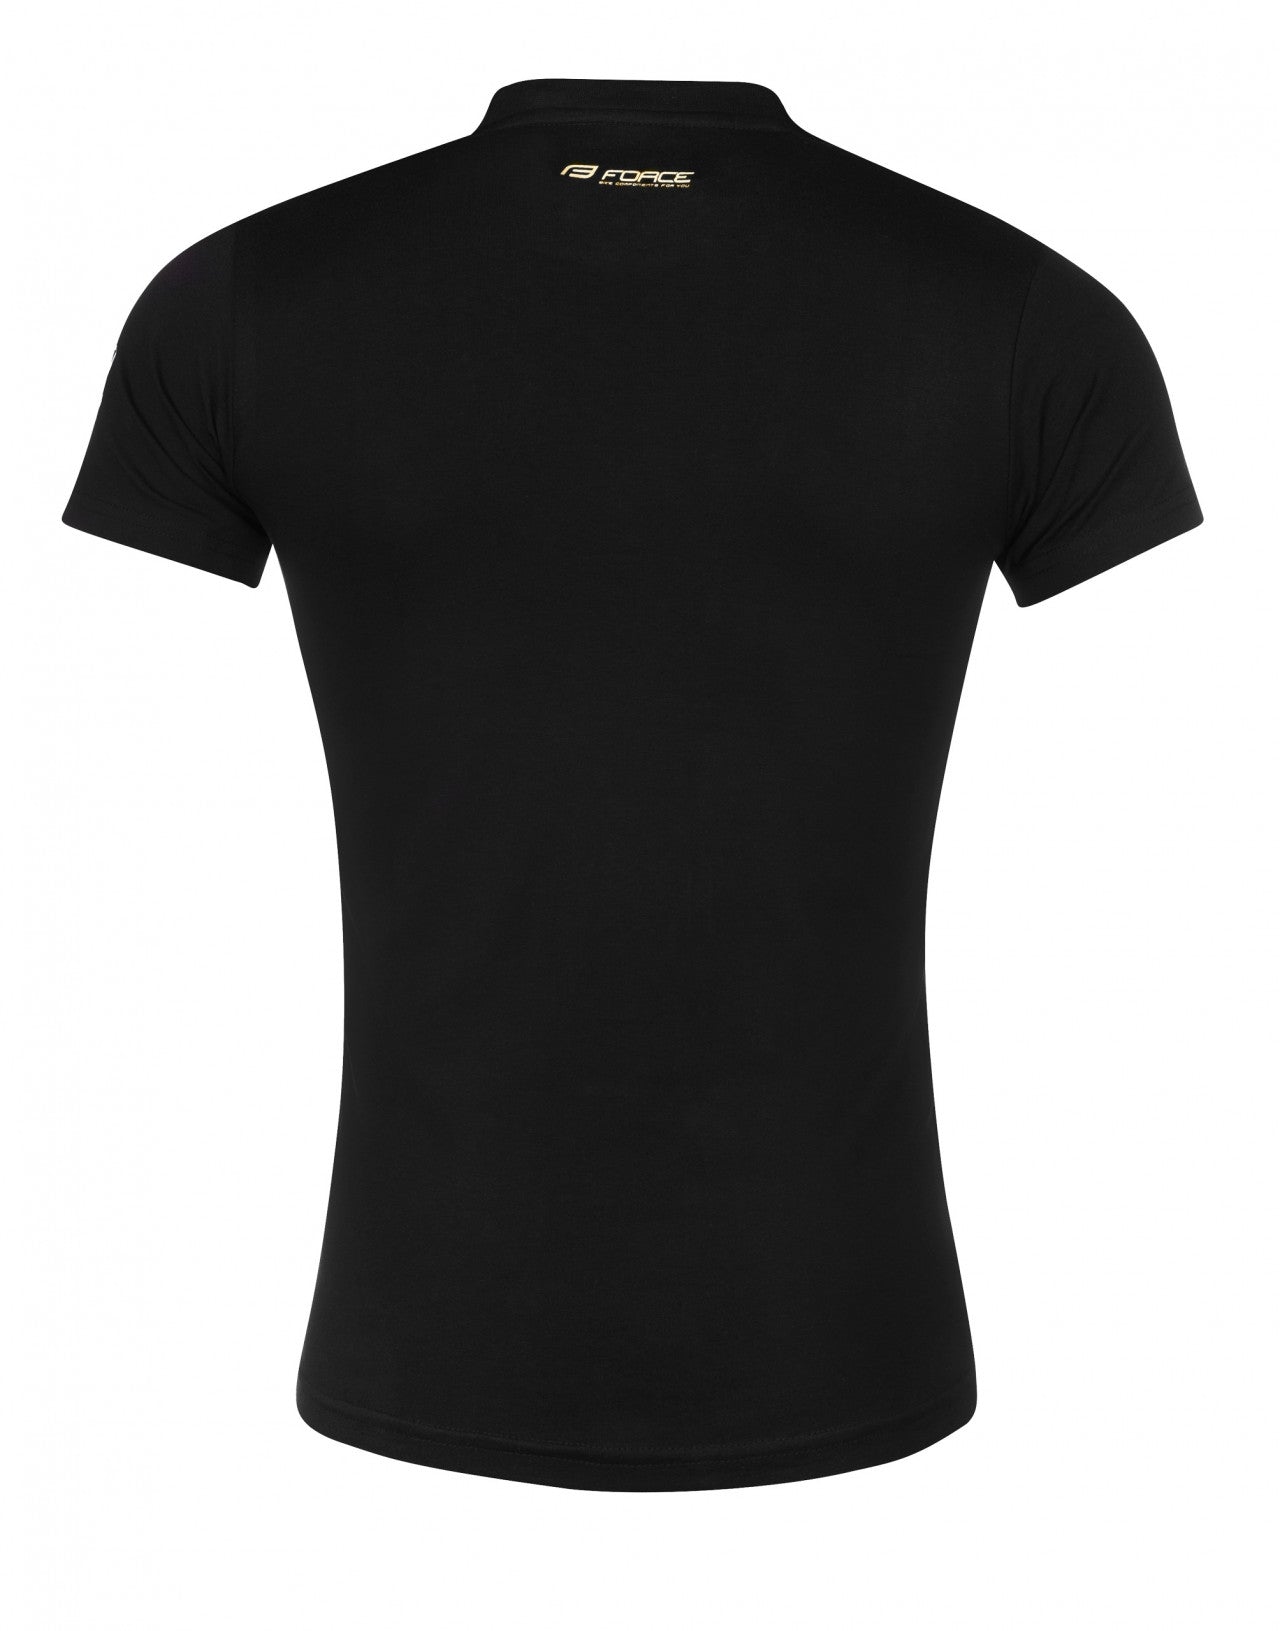 FORCE tričko 30 LET limitovaná edícia, čierne